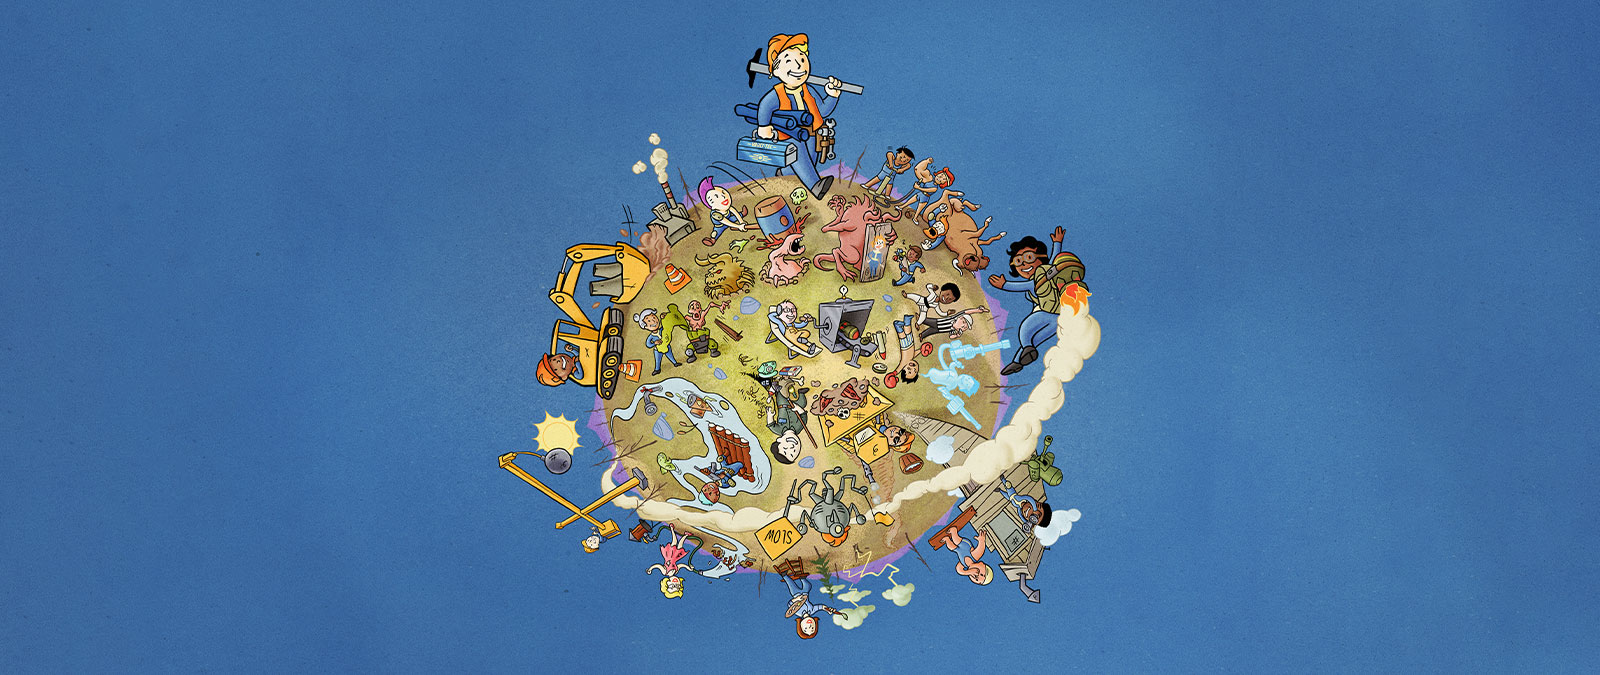 Fallout 76-Figuren auf einem Globus bei verschiedenen Aktivitäten